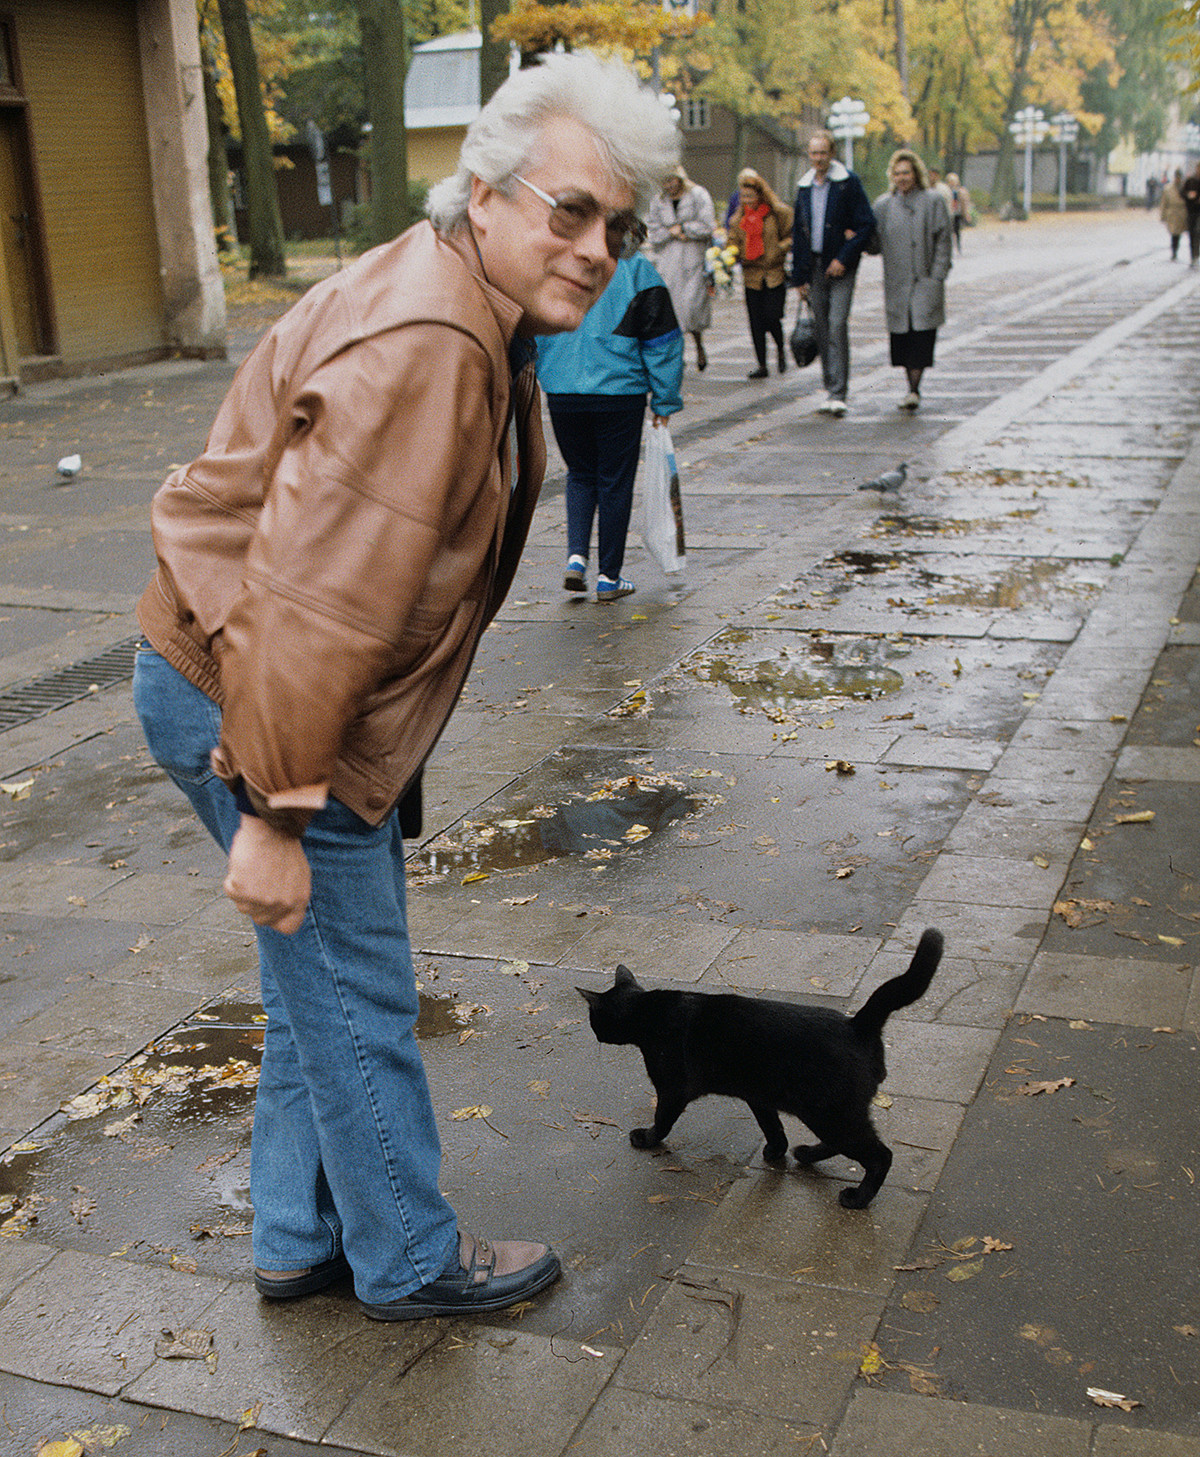 Ilusionis Rusia Alan Chumak berhenti saat melihat seekor kucing hitam.